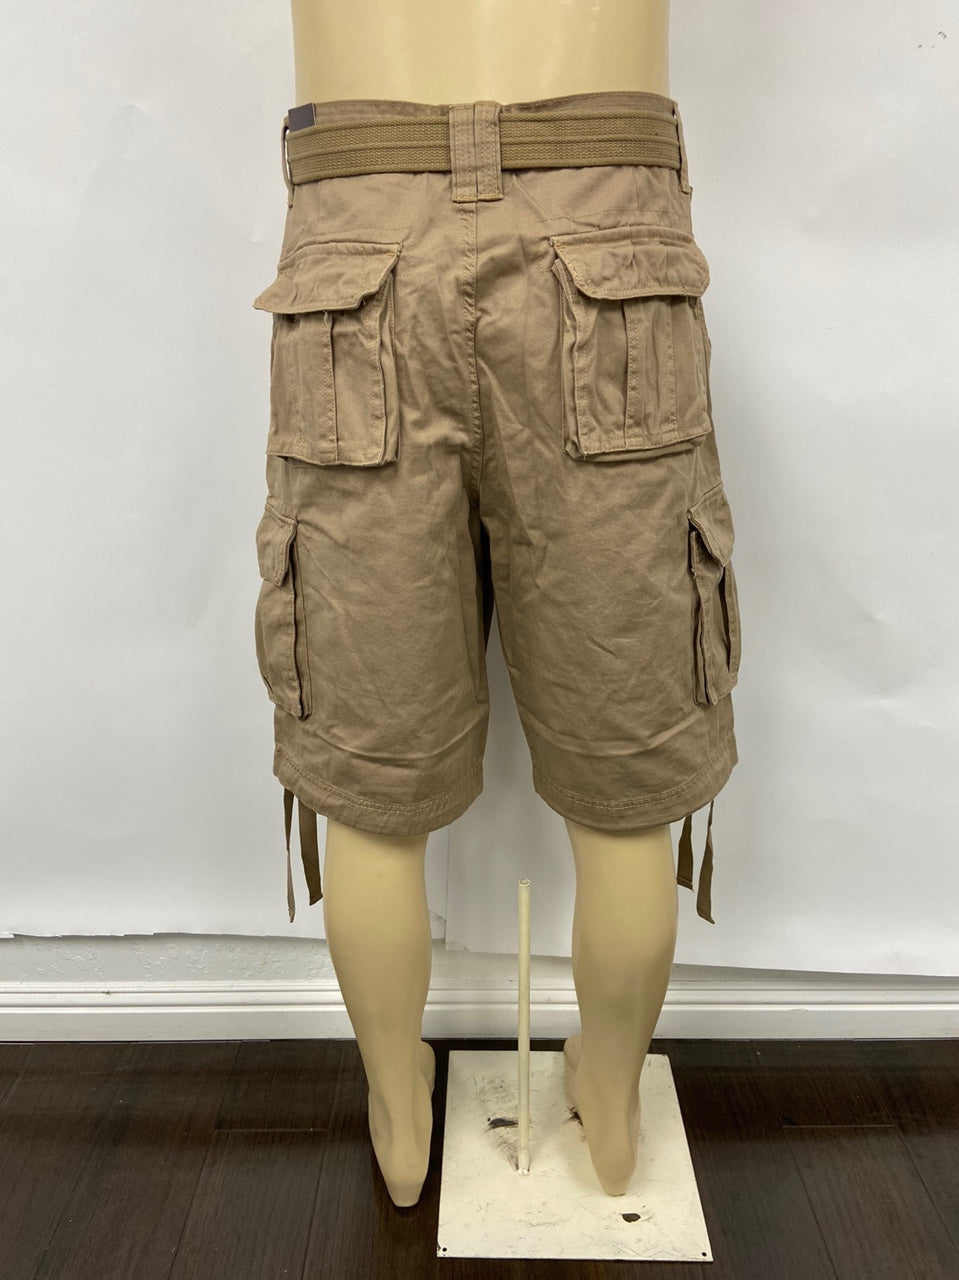 Khaki Military Cargo Shorts with Pockets